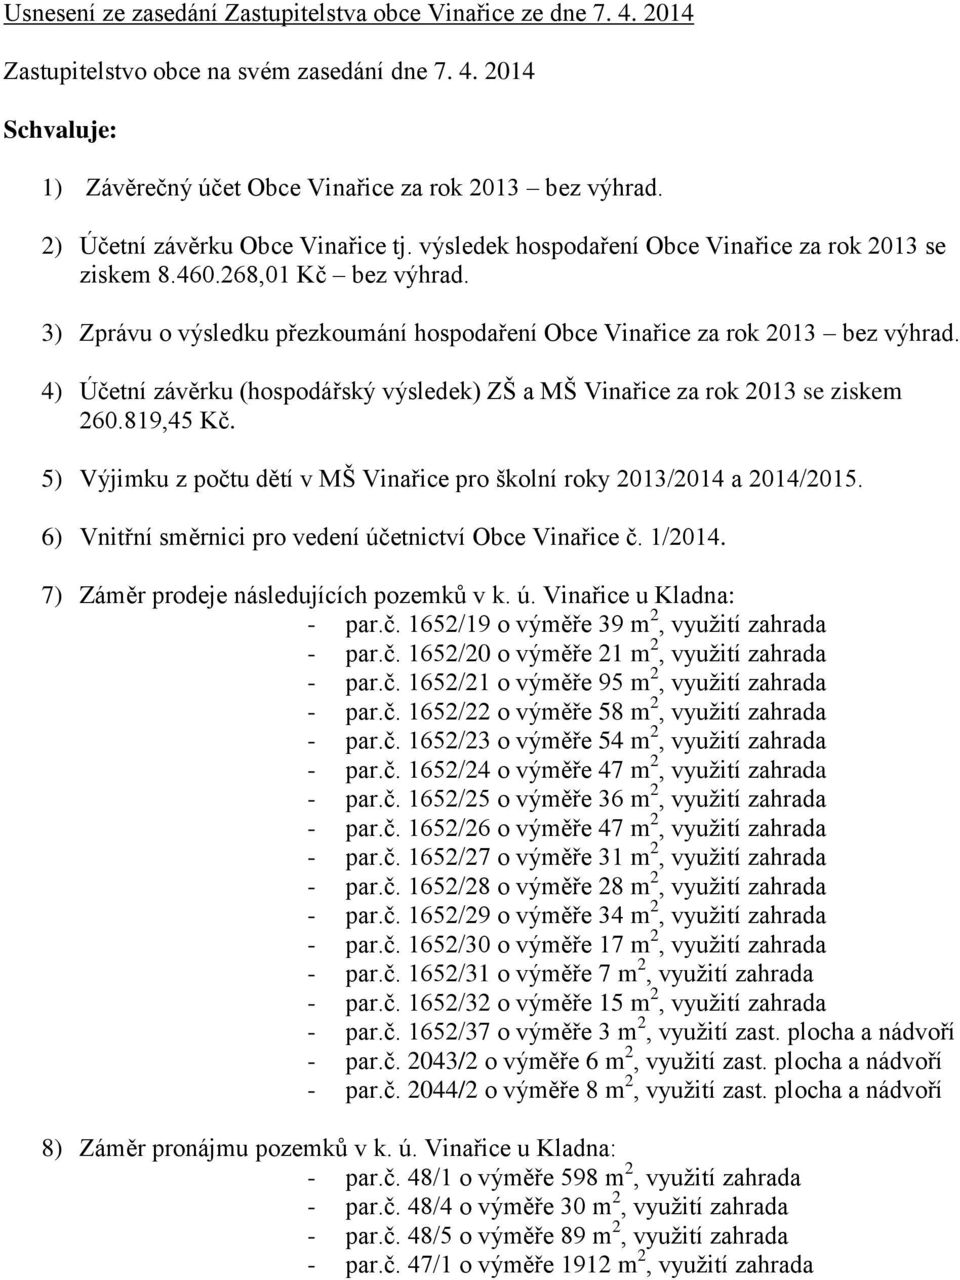 3) Zprávu o výsledku přezkoumání hospodaření Obce Vinařice za rok 2013 bez výhrad. 4) Účetní závěrku (hospodářský výsledek) ZŠ a MŠ Vinařice za rok 2013 se ziskem 260.819,45 Kč.